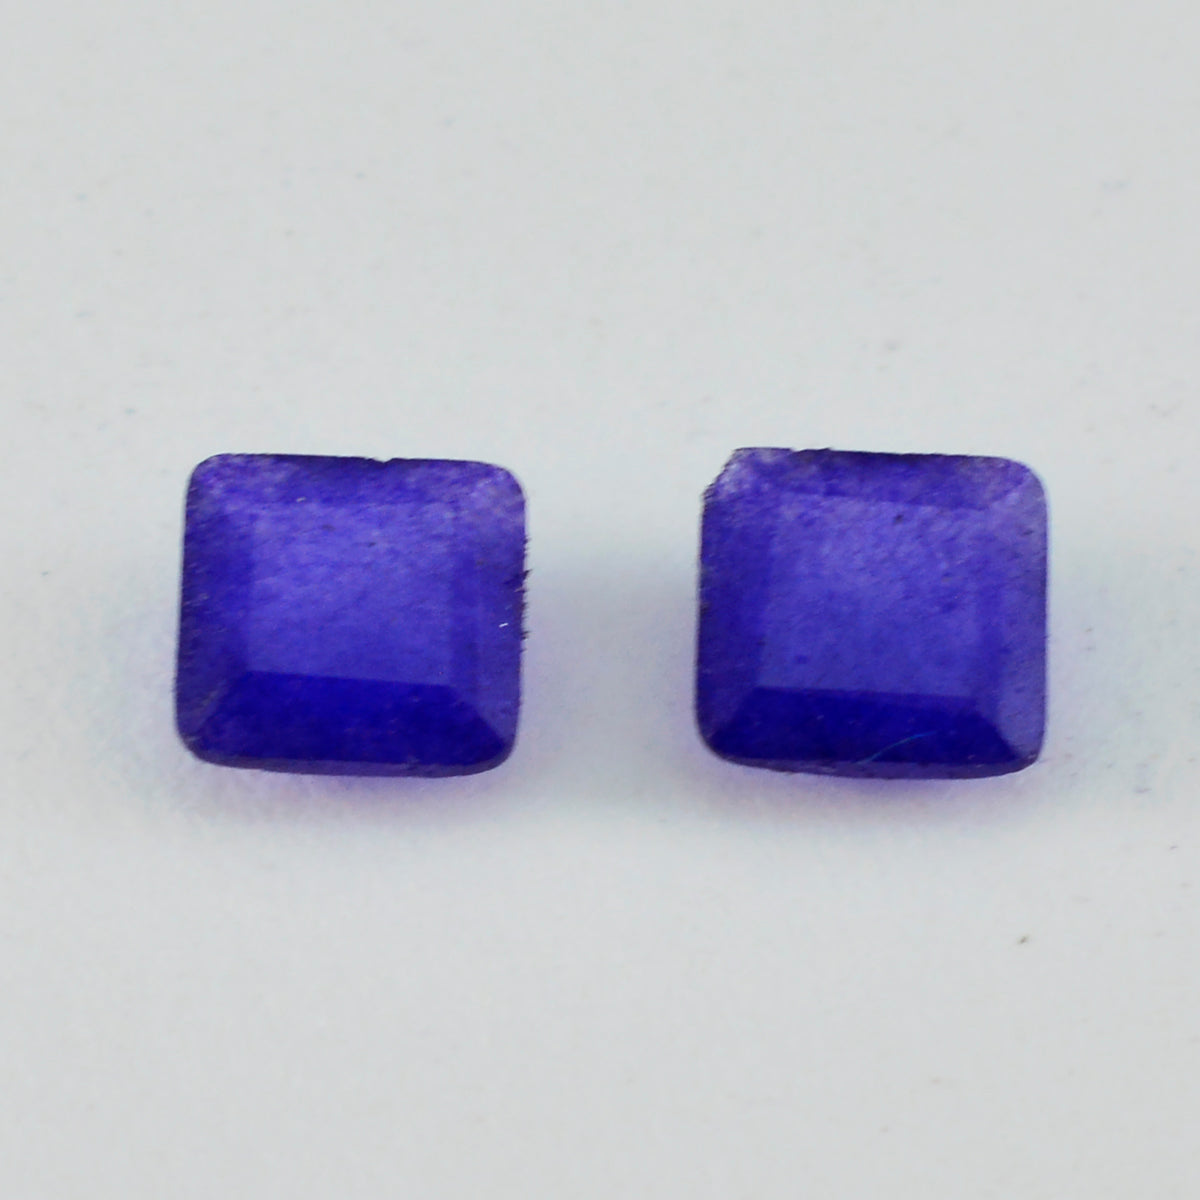 riyogems 1pc véritable jaspe bleu à facettes 8x8 mm forme carrée jolie qualité pierre précieuse en vrac